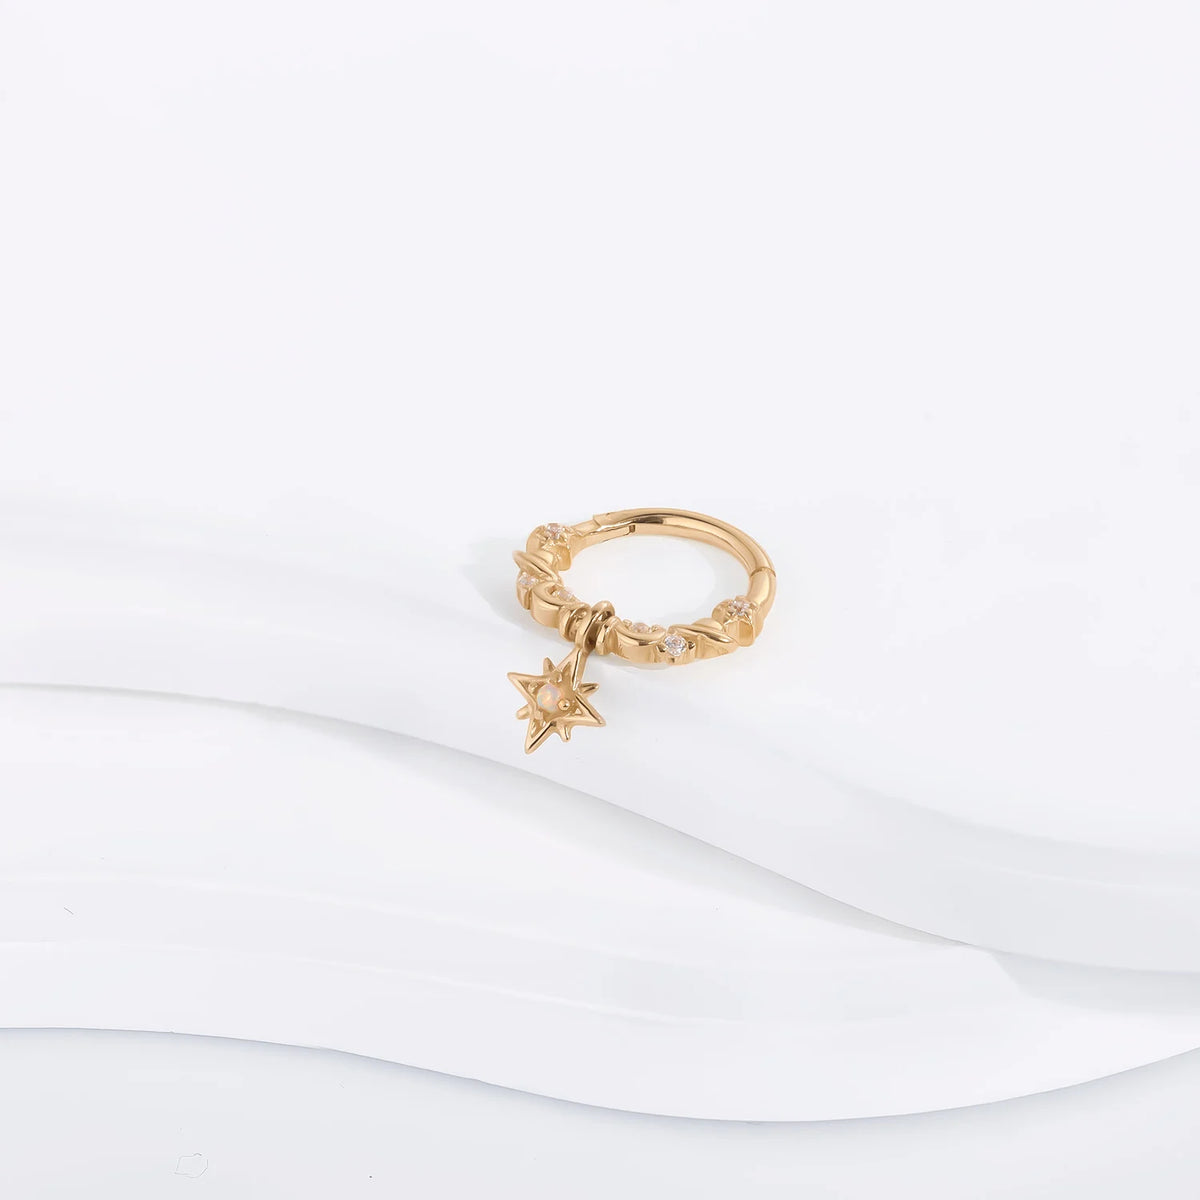 Aro de oro de 14 quilates con un colgante de ópalo pendiente colgante segmento clicker anillo de nariz estilo princesa lindo y bonito daith piercing tabique piercing